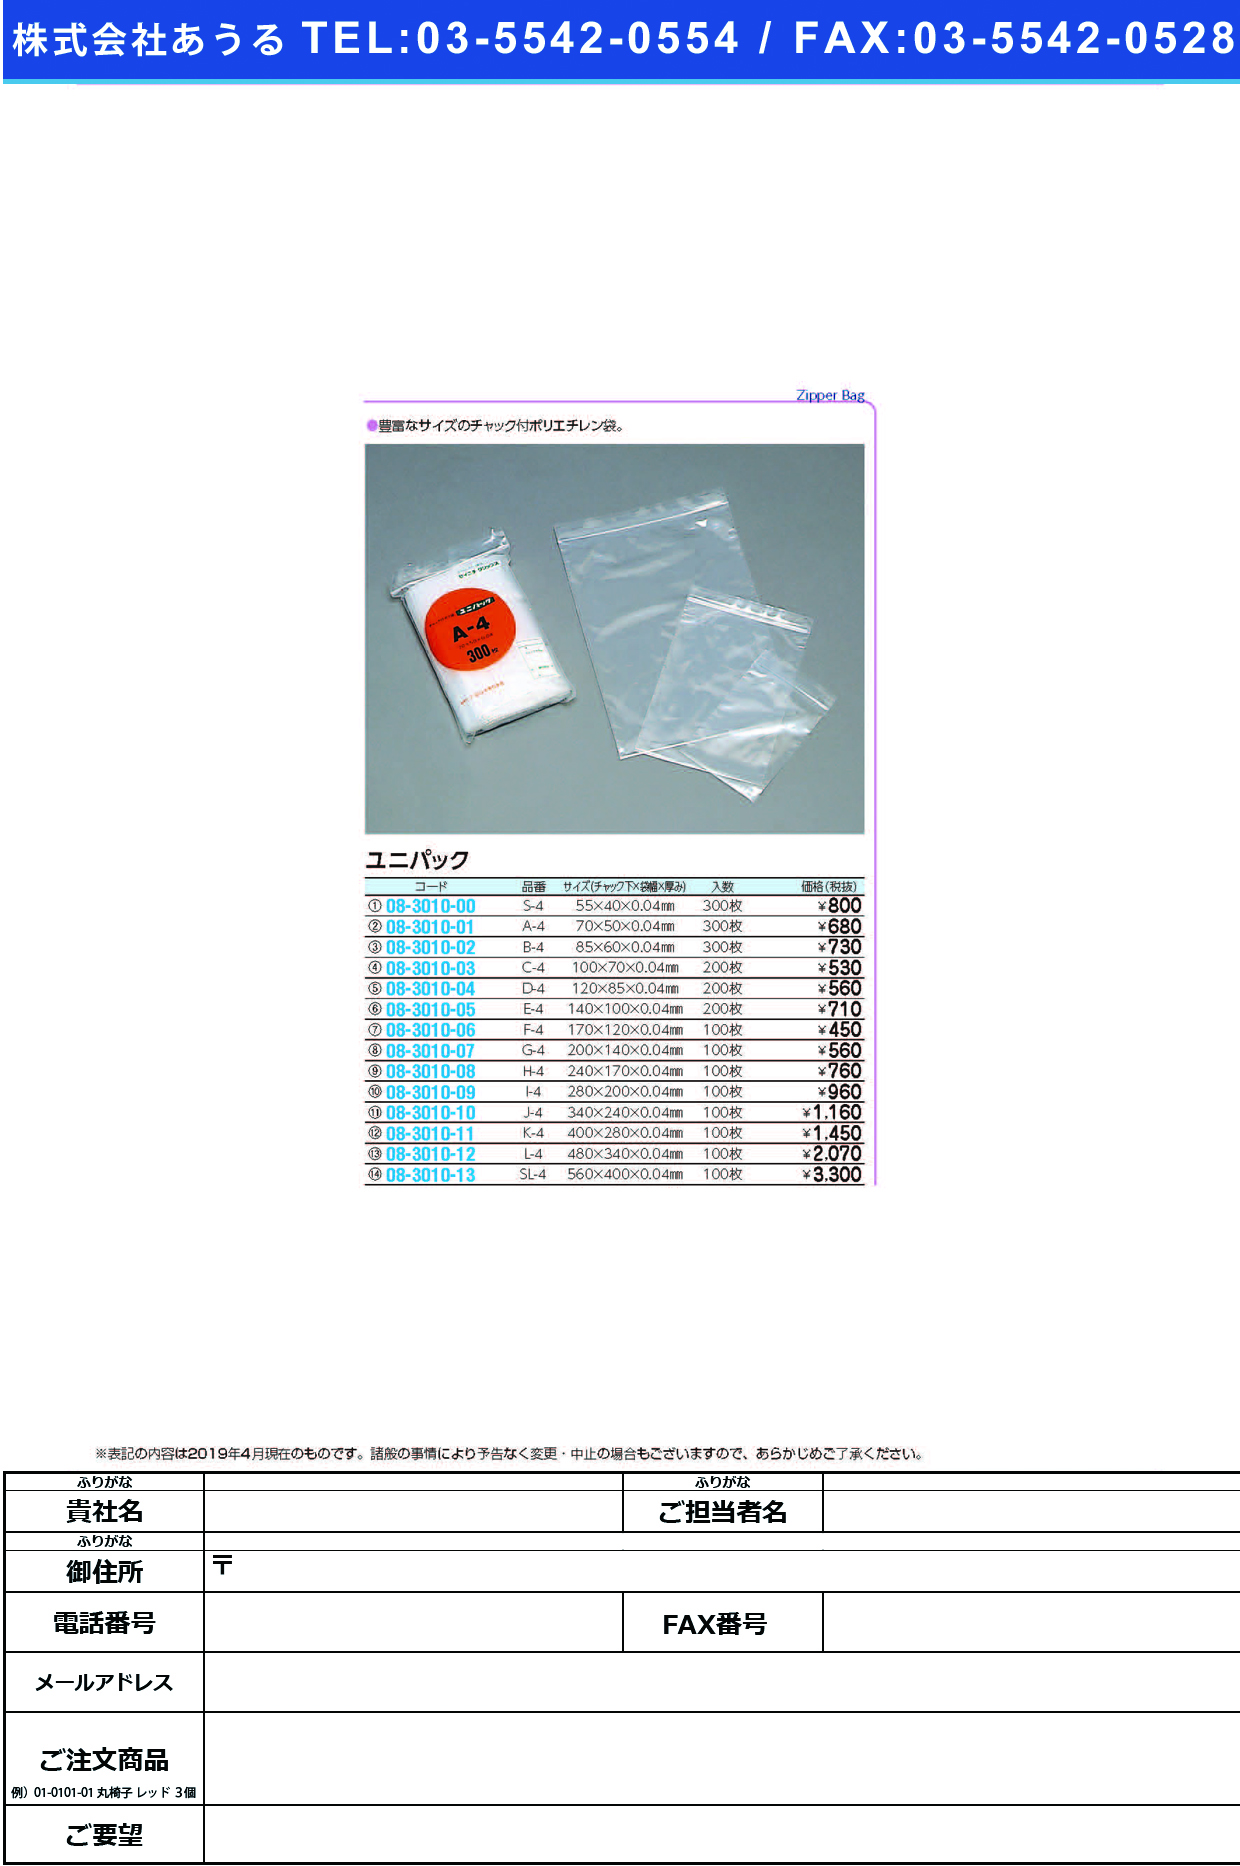 (08-3010-12)ユニパック L-4(480X340MM)100ﾏｲ ﾕﾆﾊﾟｯｸ【1袋単位】【2019年カタログ商品】